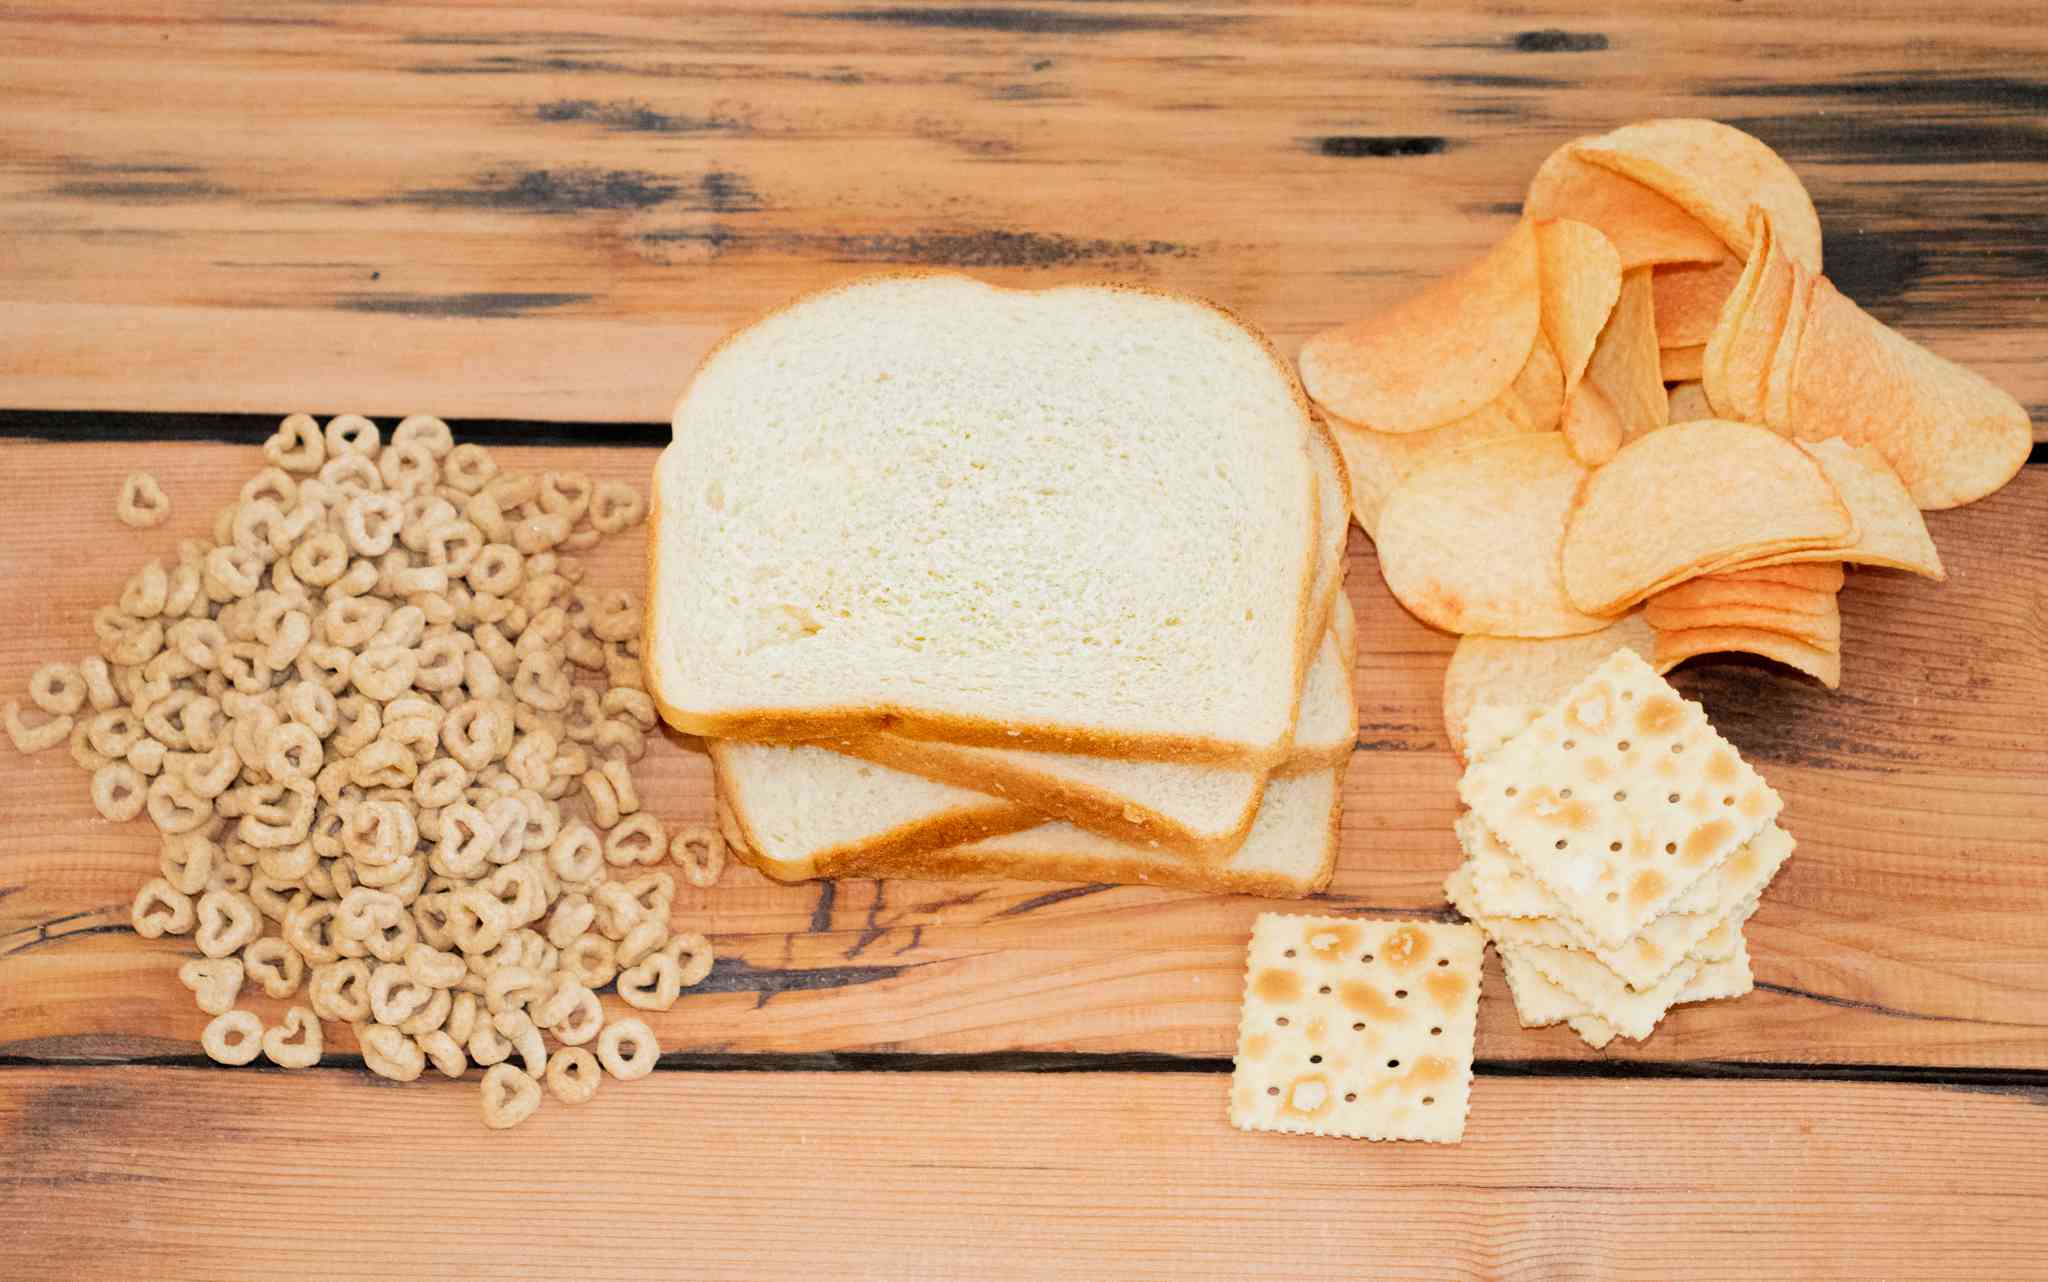 los cereales, el pan blanco y las patatas fritas son alimentos poco saludables y no aptos para patos